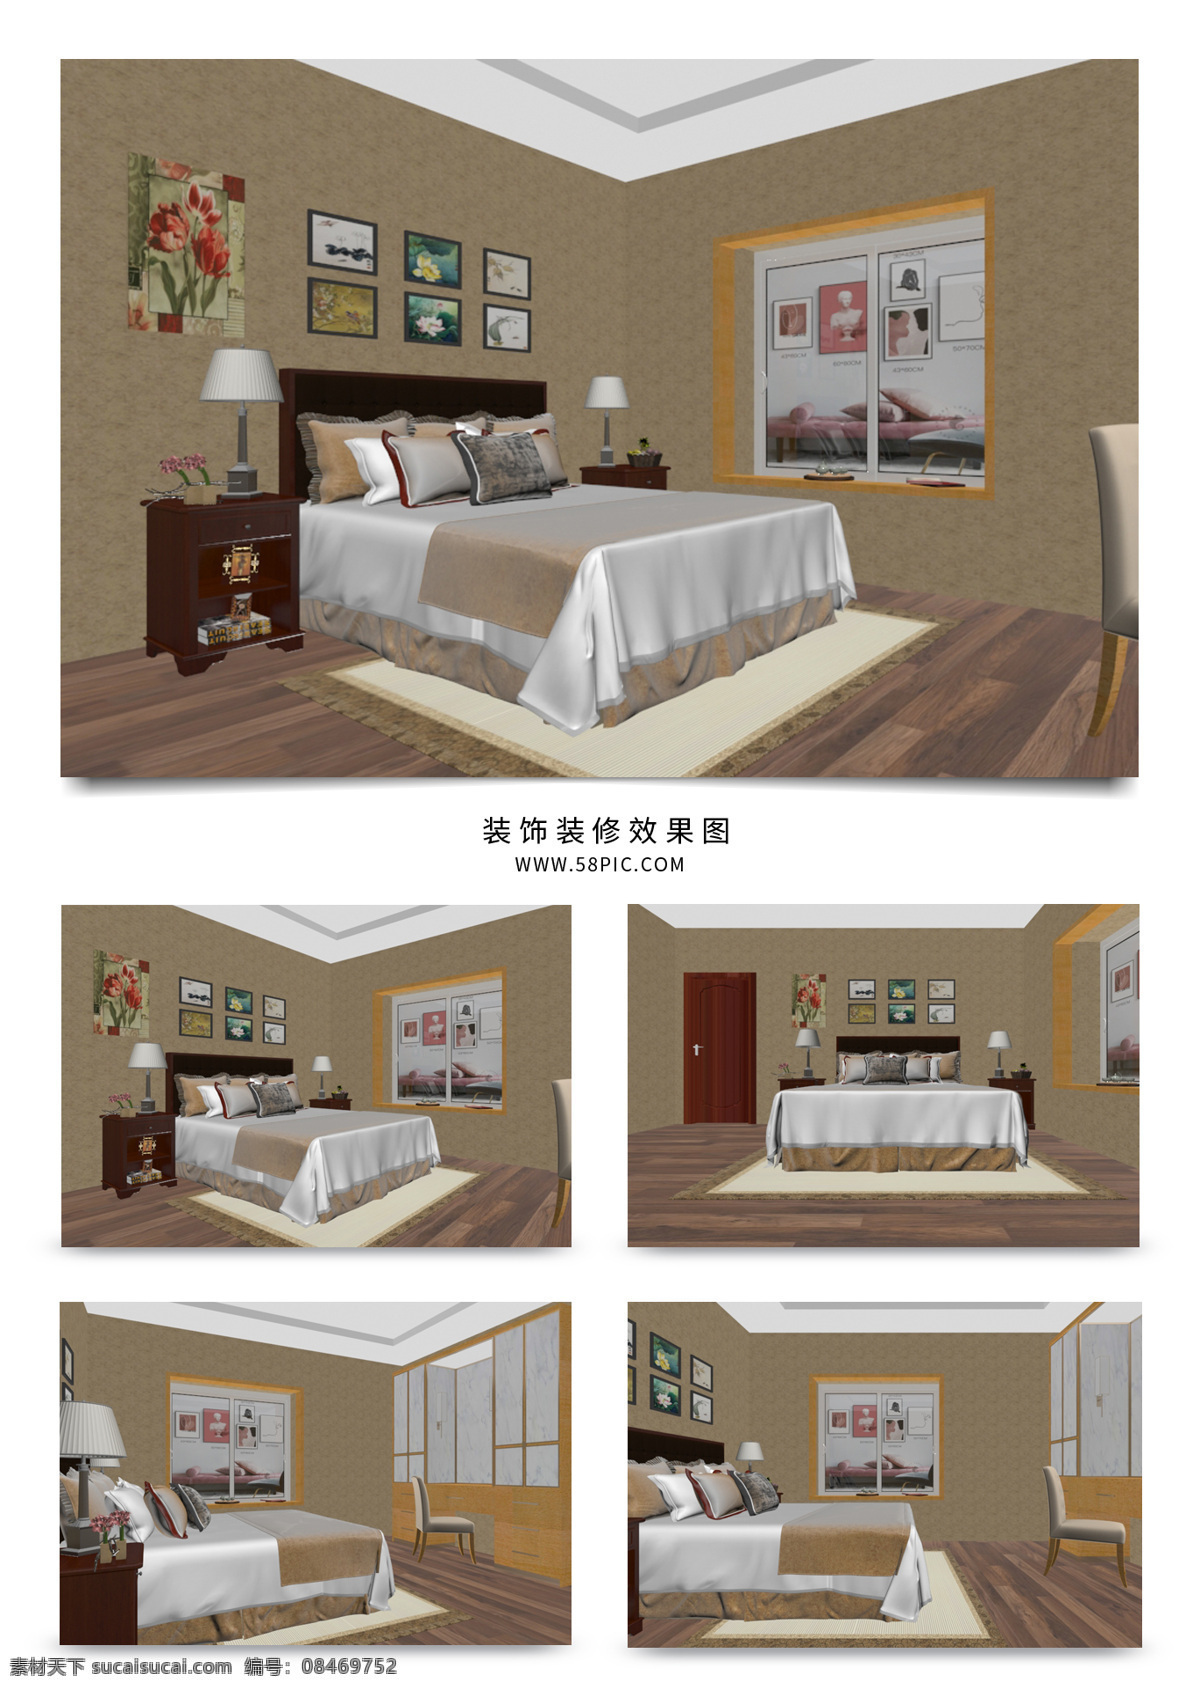 现代 新 中式 家装 卧室 效果图 床 装饰画 床头柜 卧室效果图 新中式